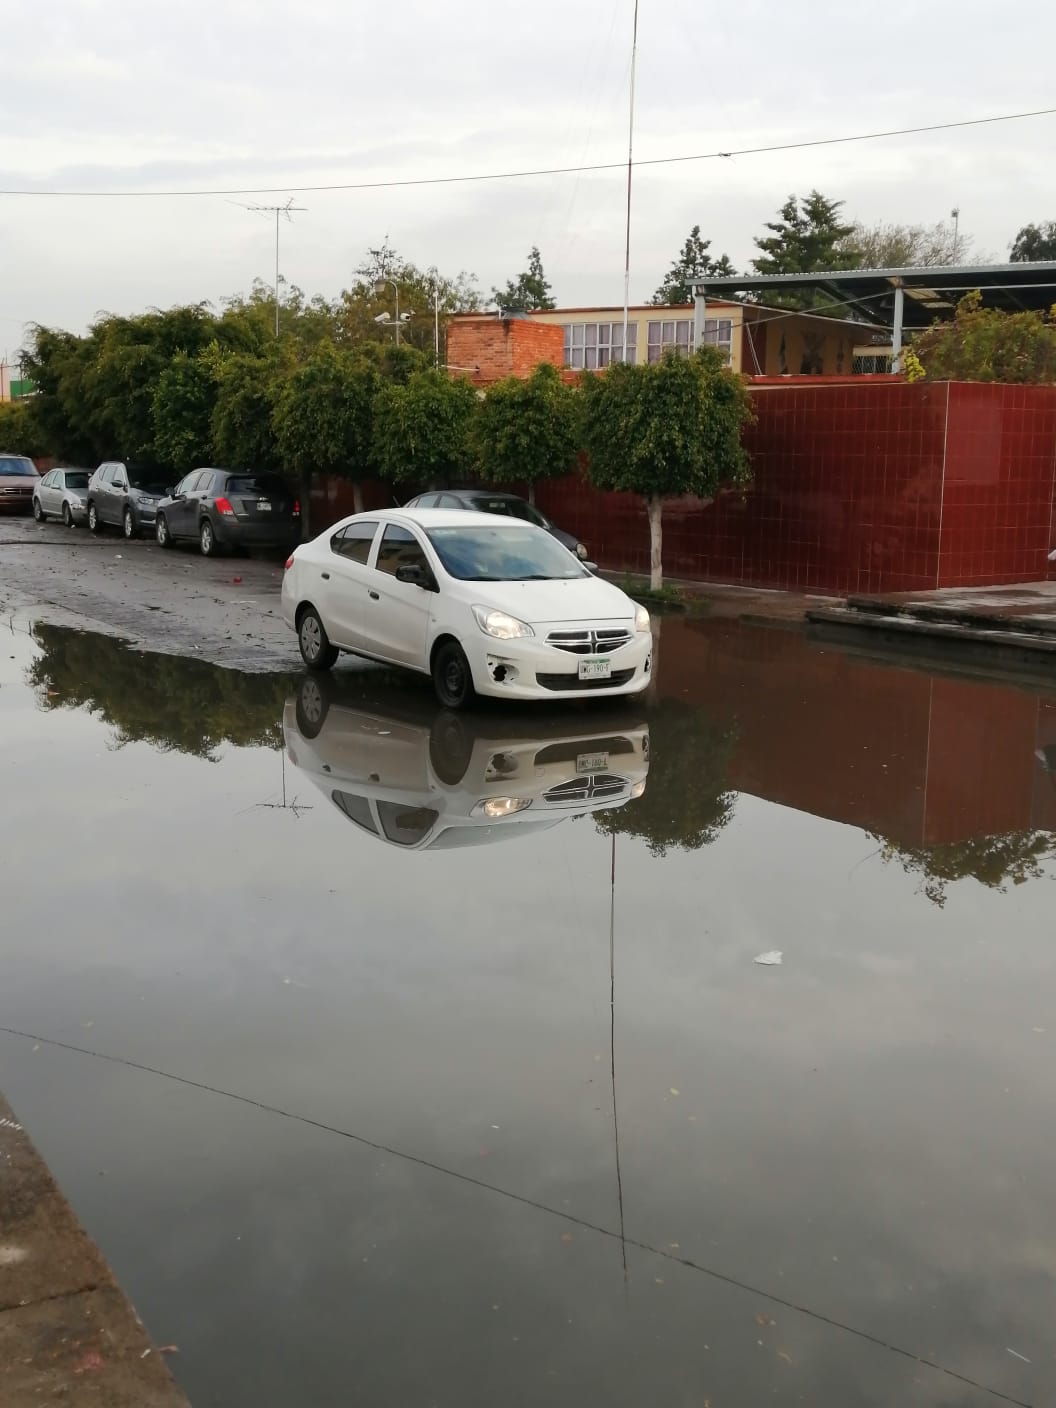 El director general de Protección Civil, José Ignacio Benavente Duque, informó que continuarán las lluvias en San Luis Potosí durante este fin de semana